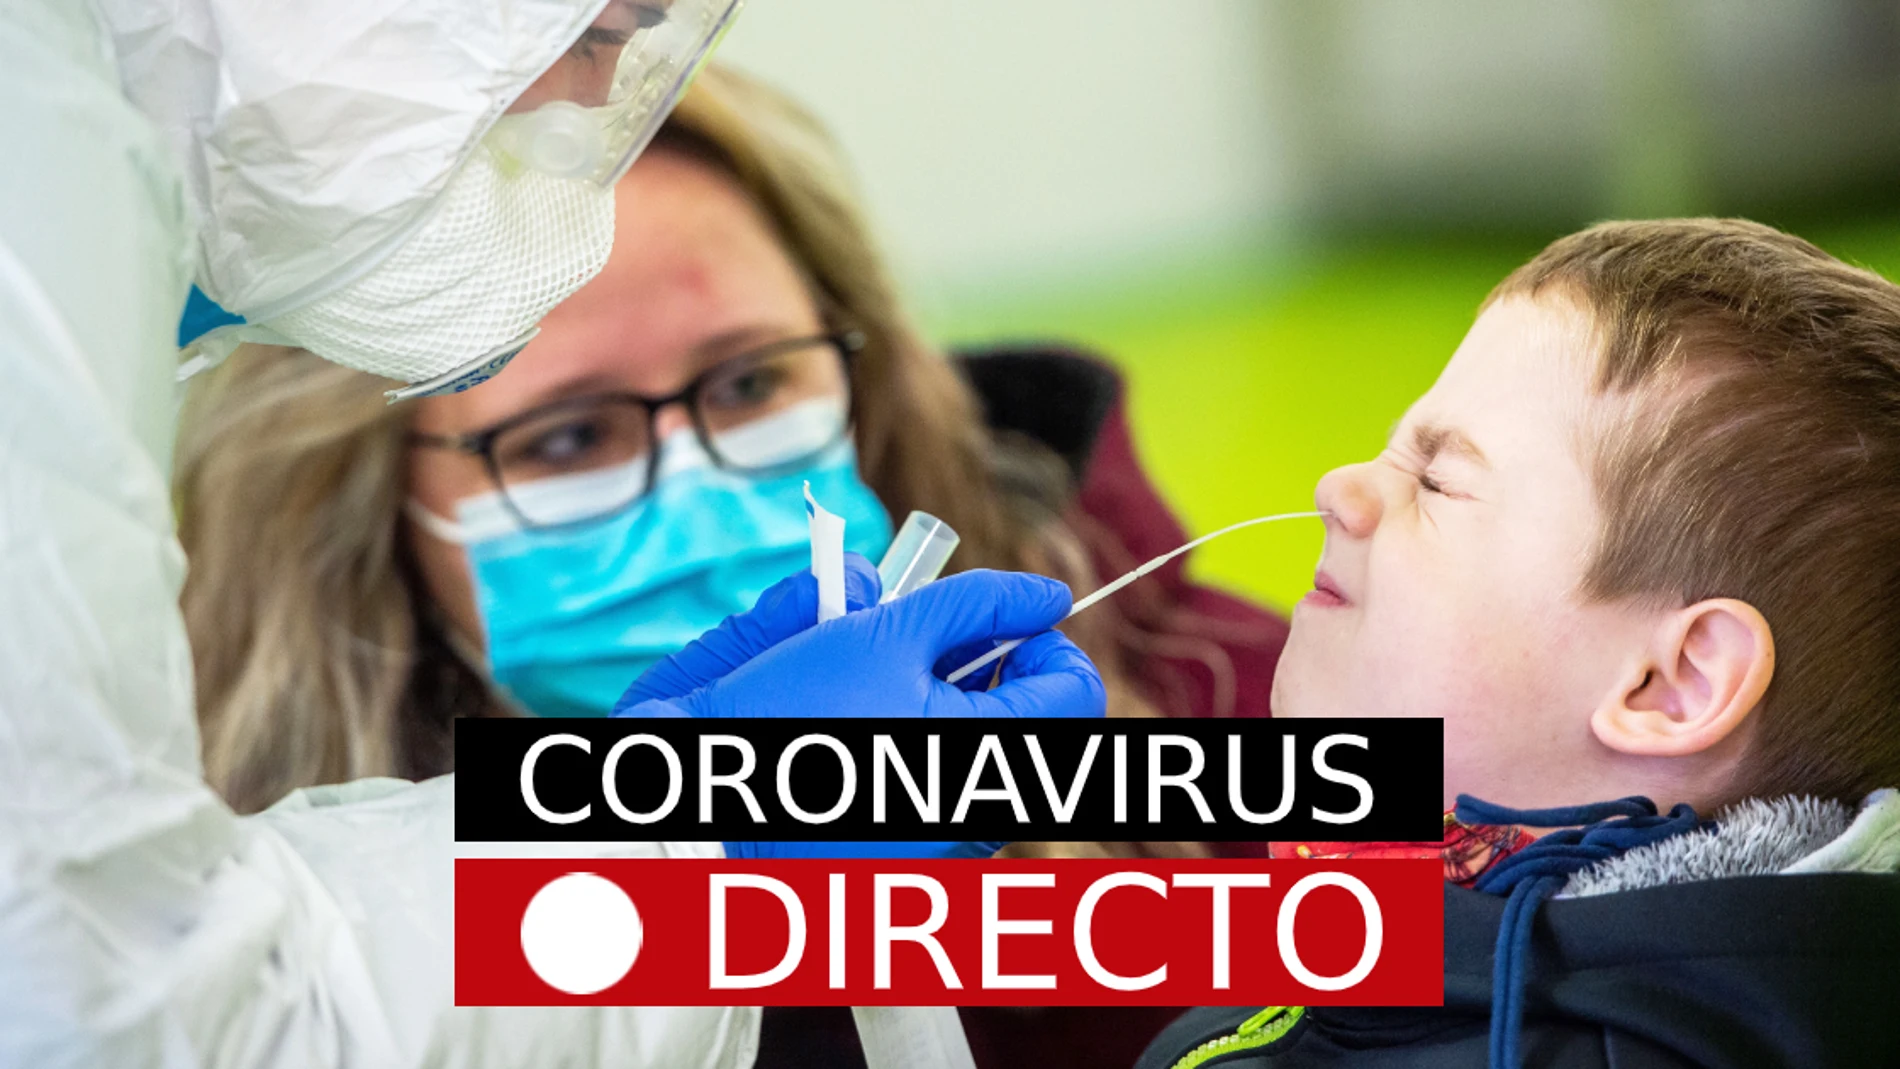 Plan de vacunación COVID-19 en España | Última hora del coronavirus, restricciones en Madrid y confinamiento, en directo